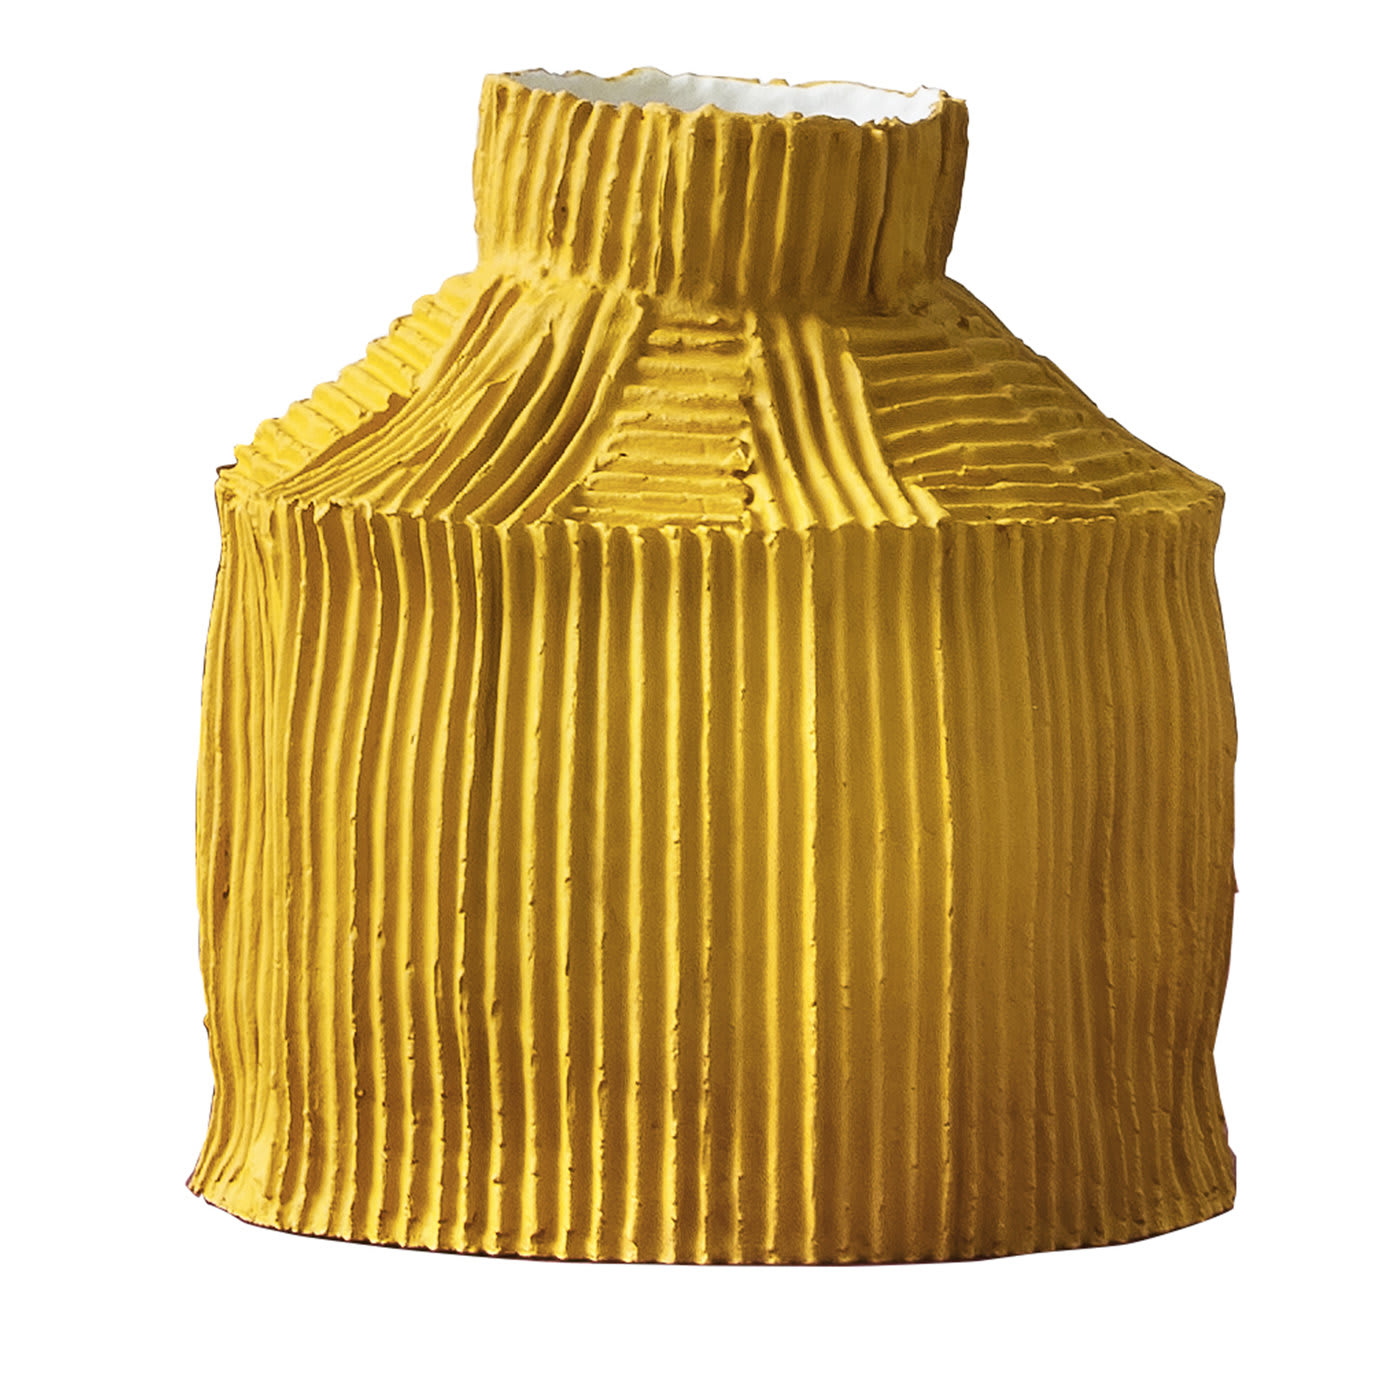 Fide Yellow Vase - Paola Paronetto